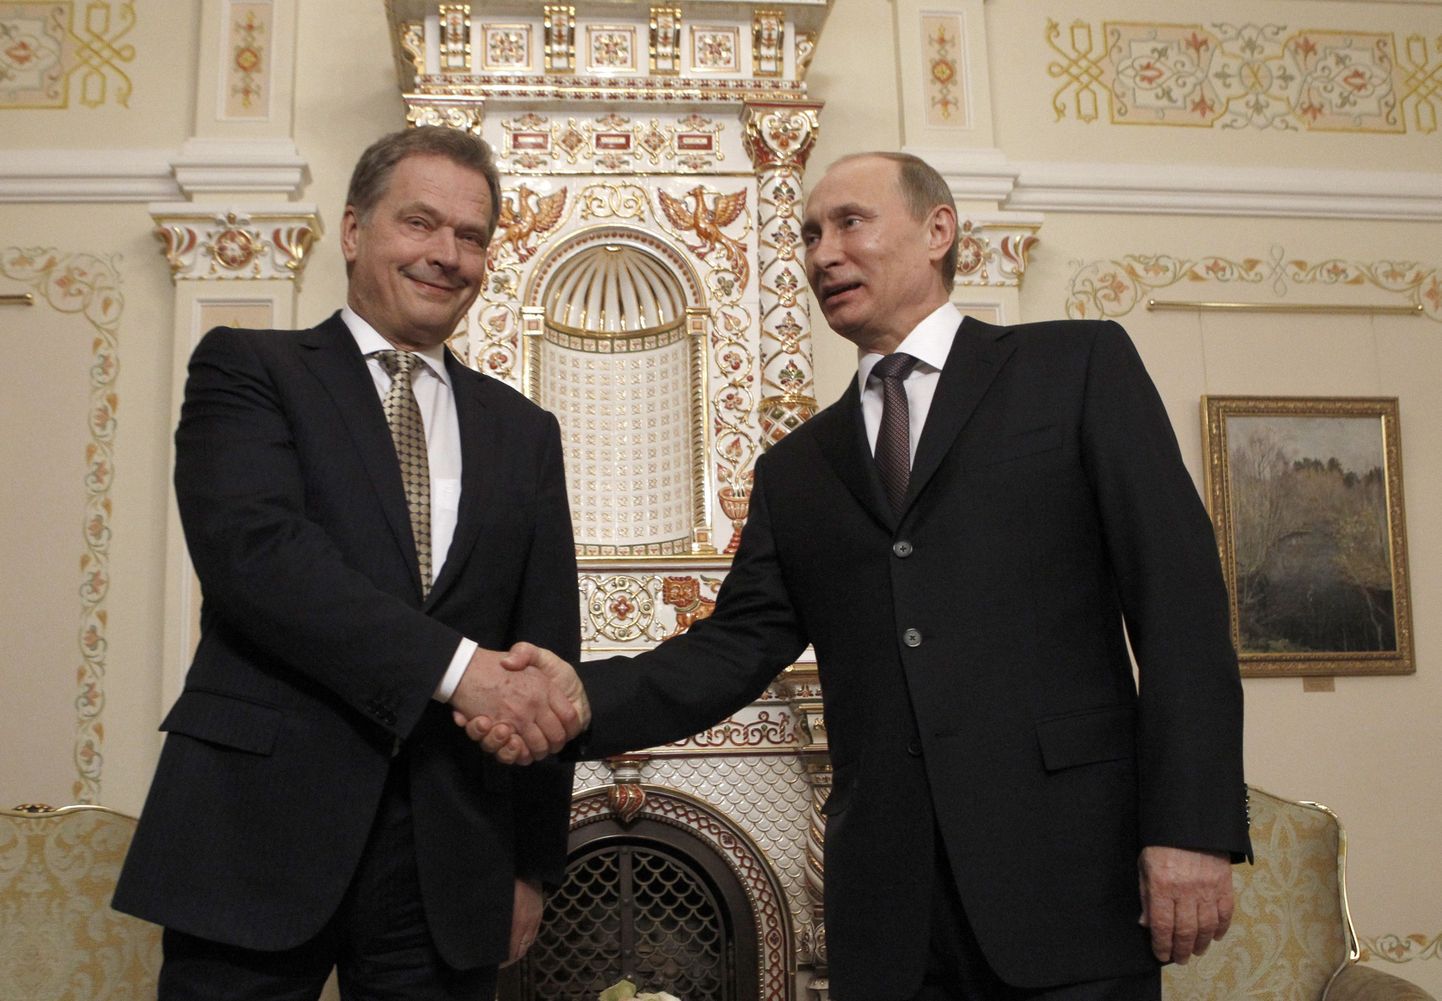 Soome ja Vene presidendid Sauli Niinistö ja Vladimir Putin kohtusid täna Moskva lähedal Novo-Ogarjovo ametiresidentsis.